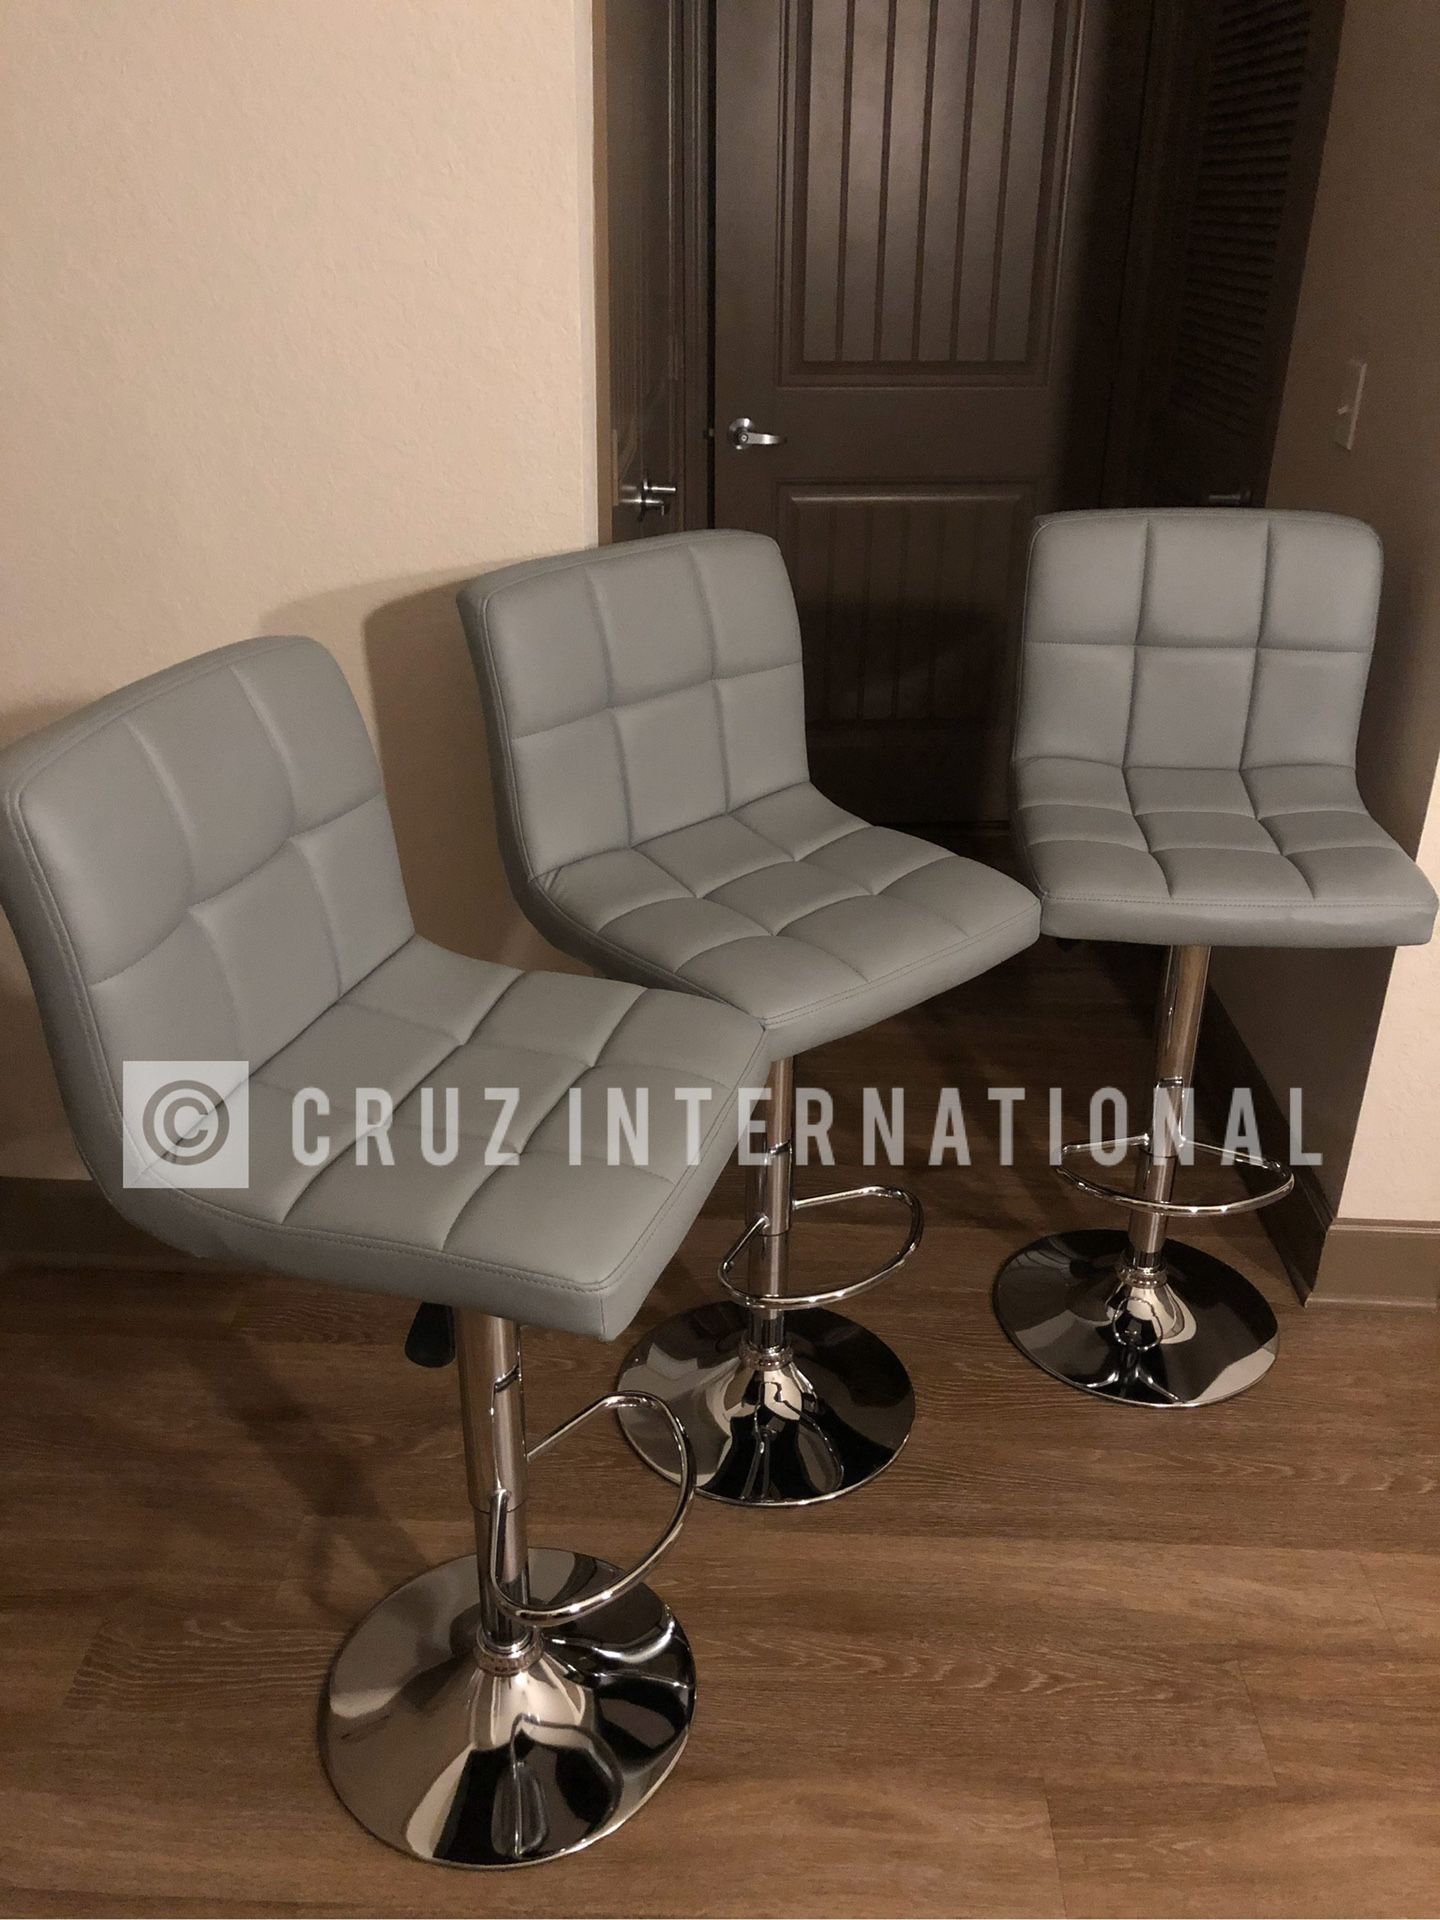 New 3 gray stools.